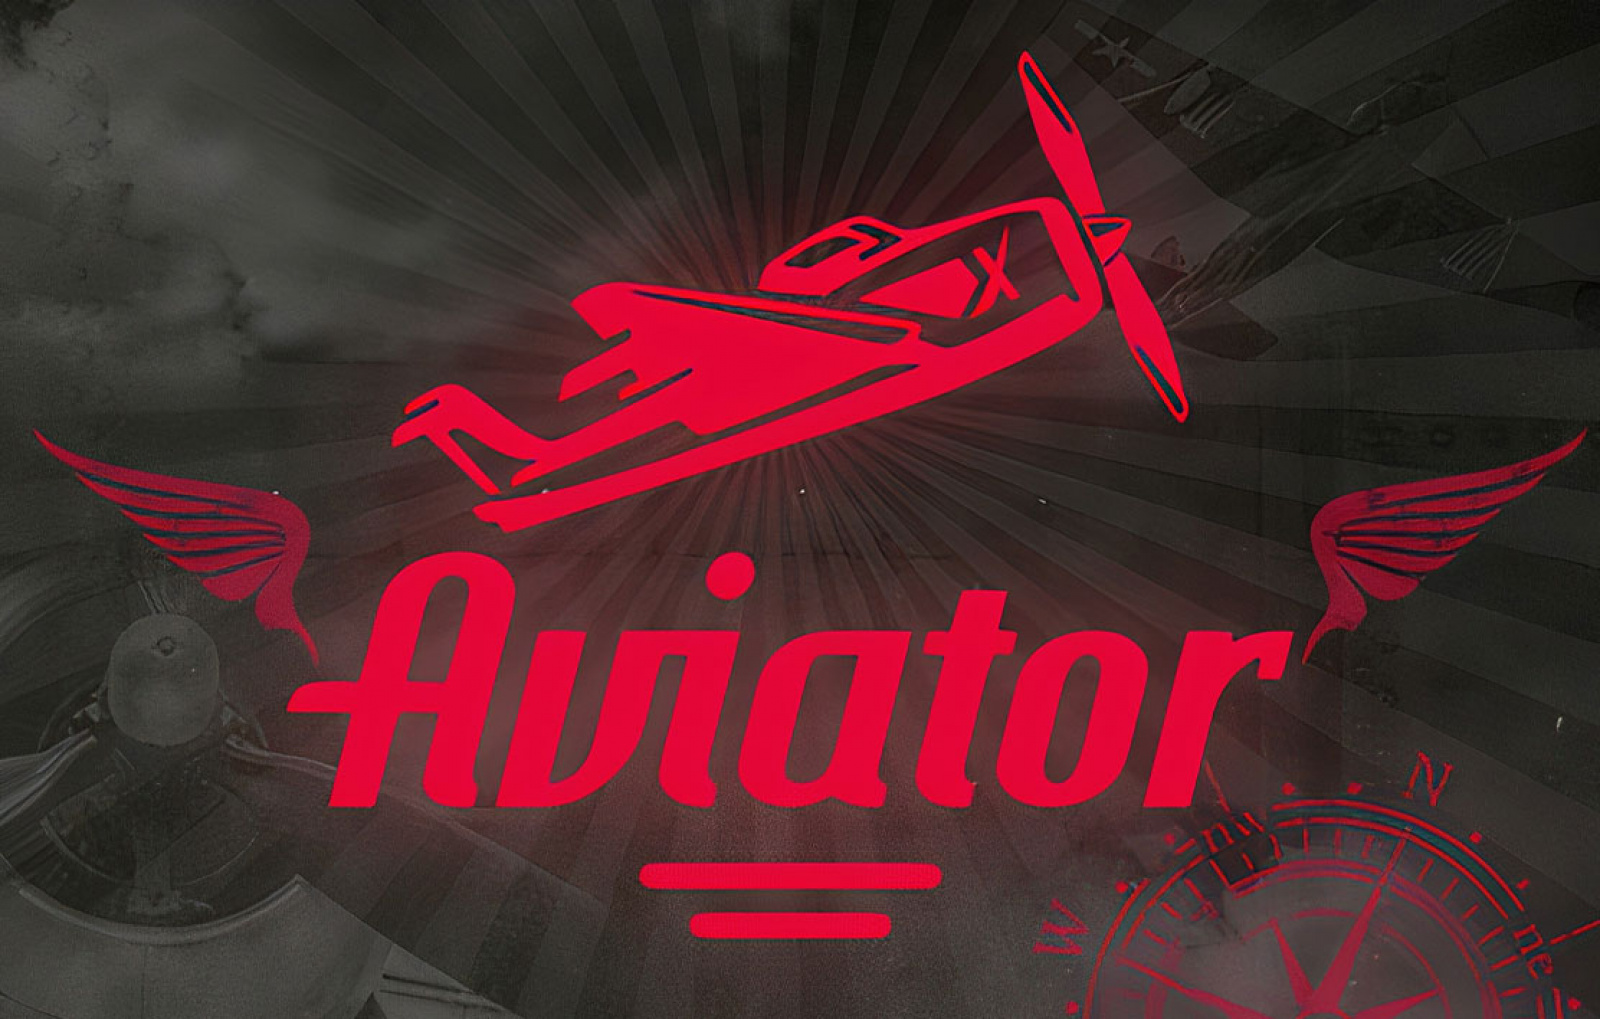 Aviator игра aviator igra1. Aviator игра. Aviator слот. Авиатор игра в казино. Авиатор казино логотип.